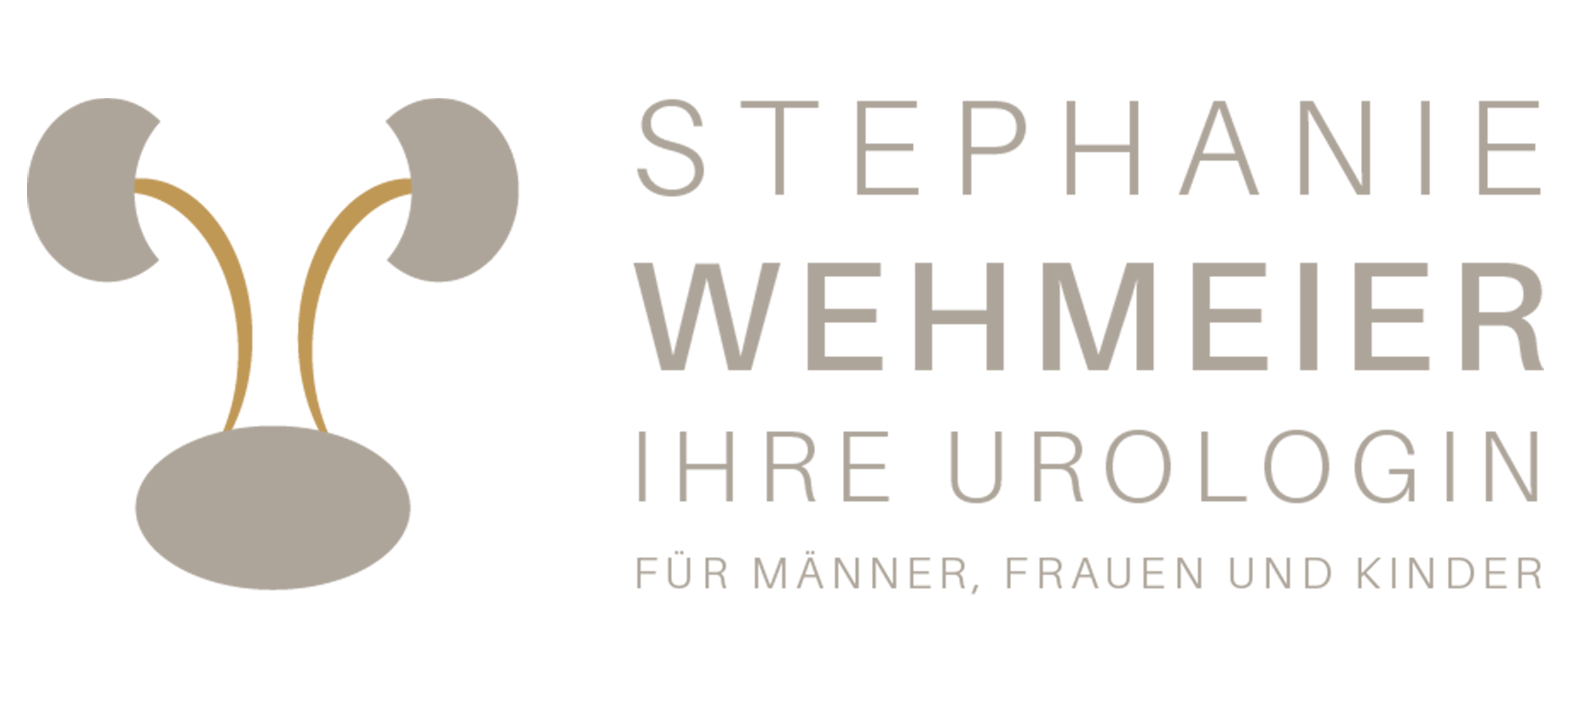 Stephanie Wehmeier - Ihre Urologin für Männer, Frauen und Kinder